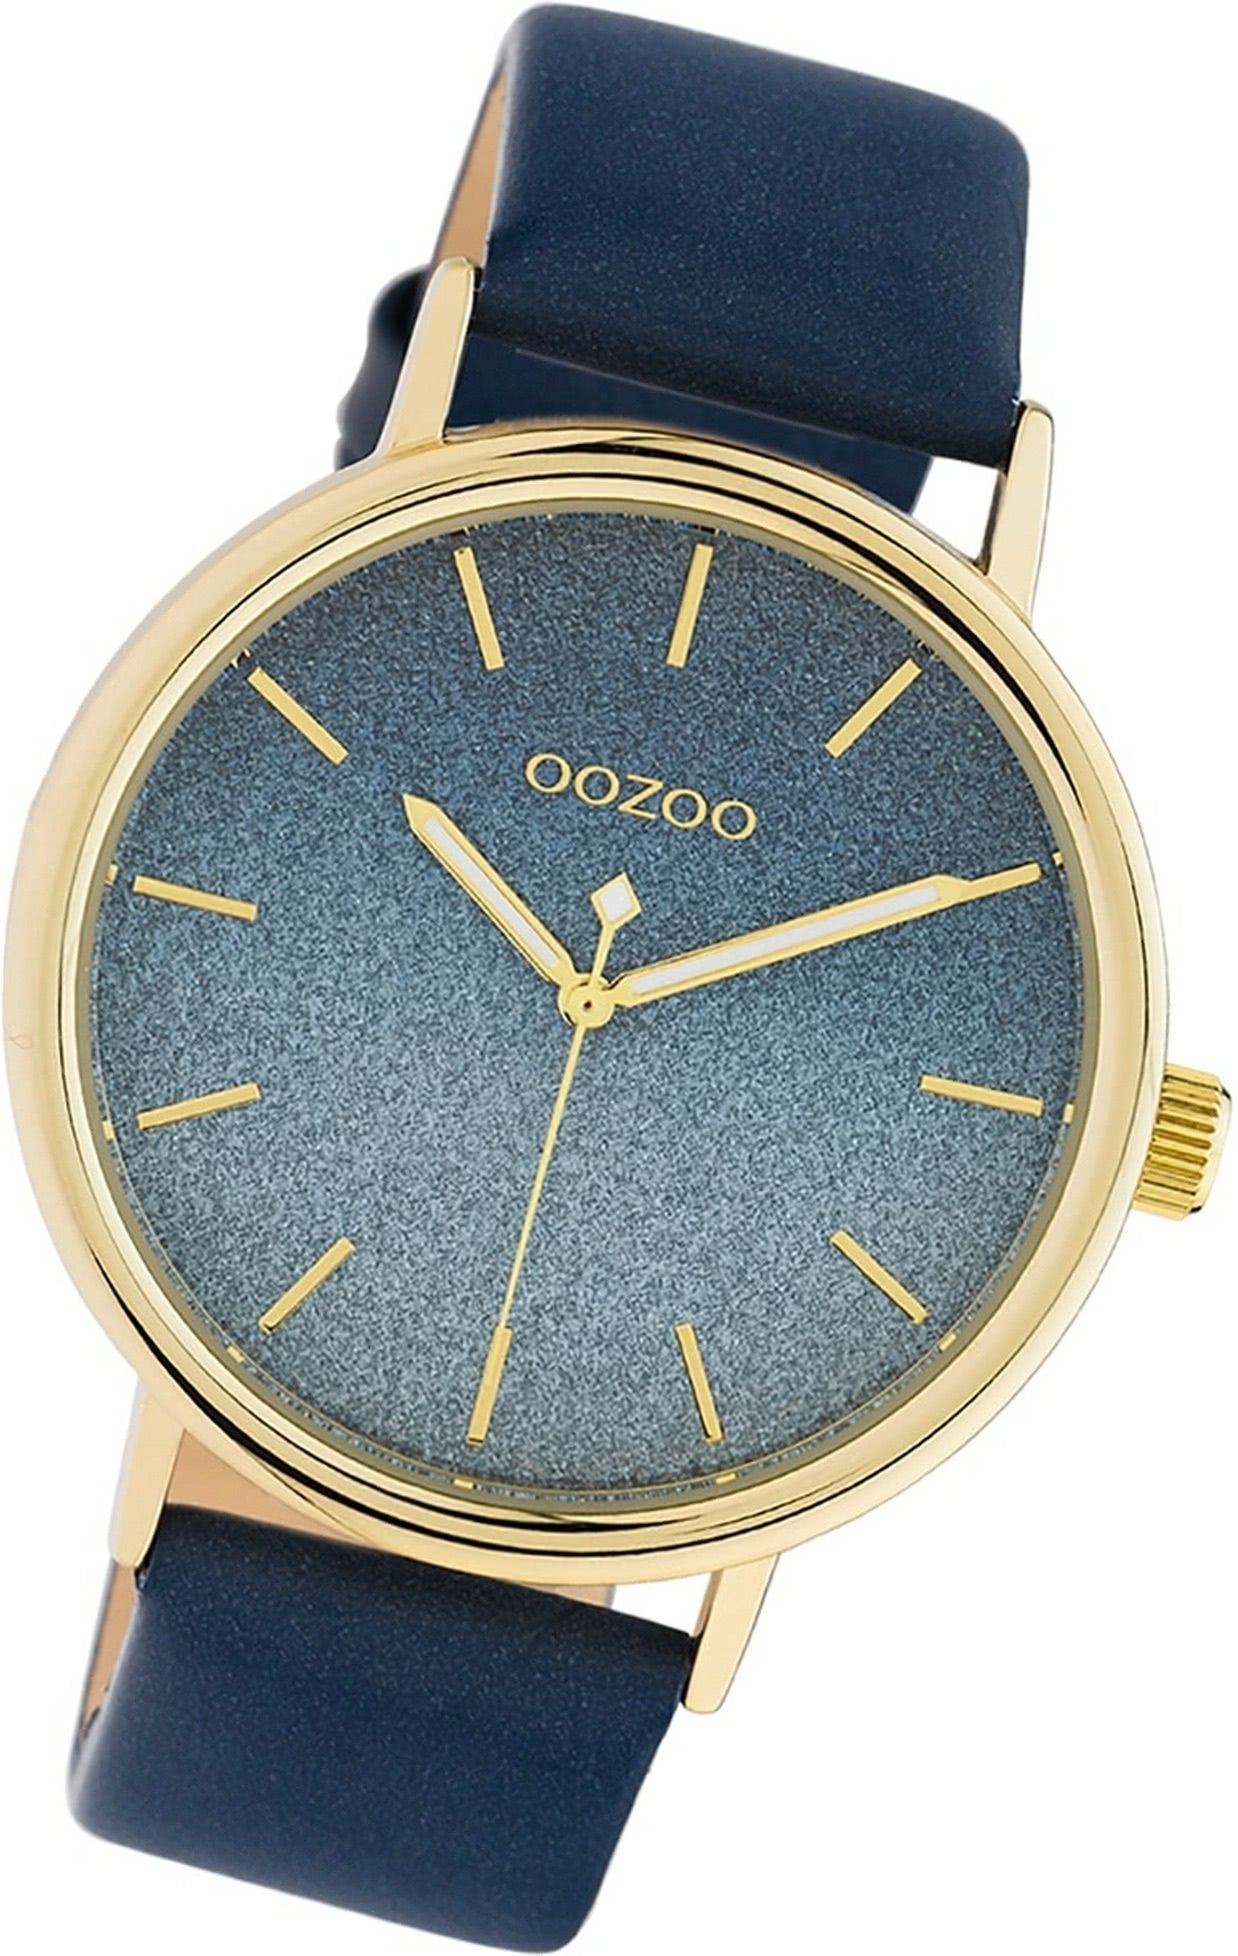 (ca. C10938 Damen groß Uhr Analog, OOZOO dunkelblau, rundes Oozoo Gehäuse, 42mm) Damenuhr Lederarmband Leder Quarzuhr